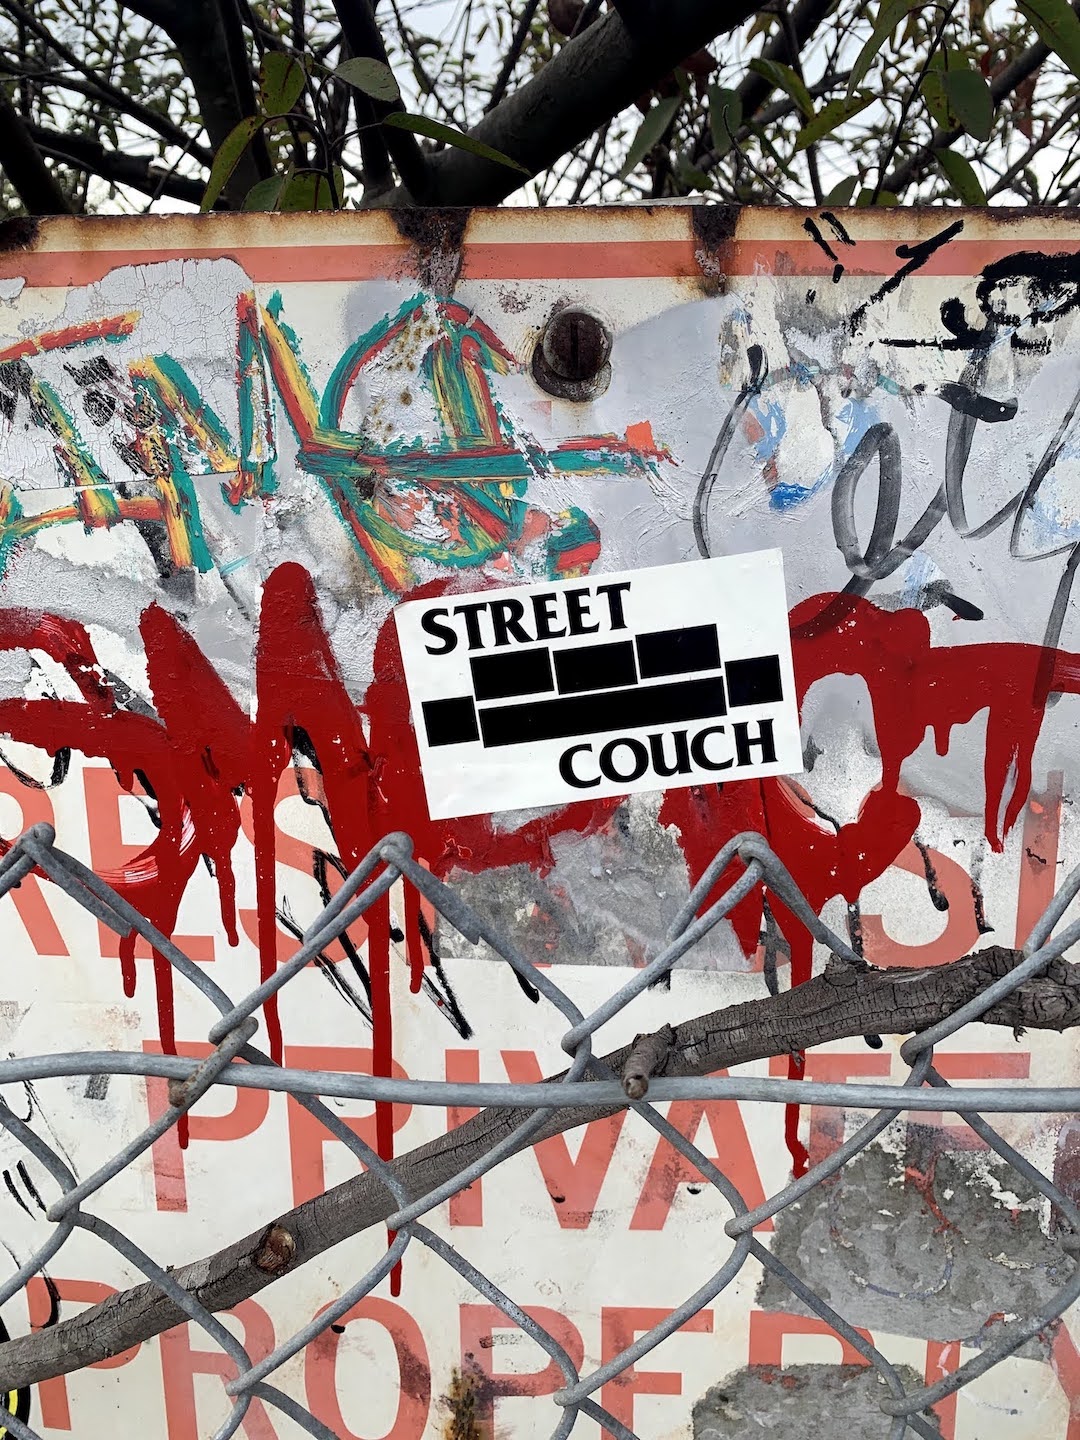 street couch sticker and graffiti in venice california